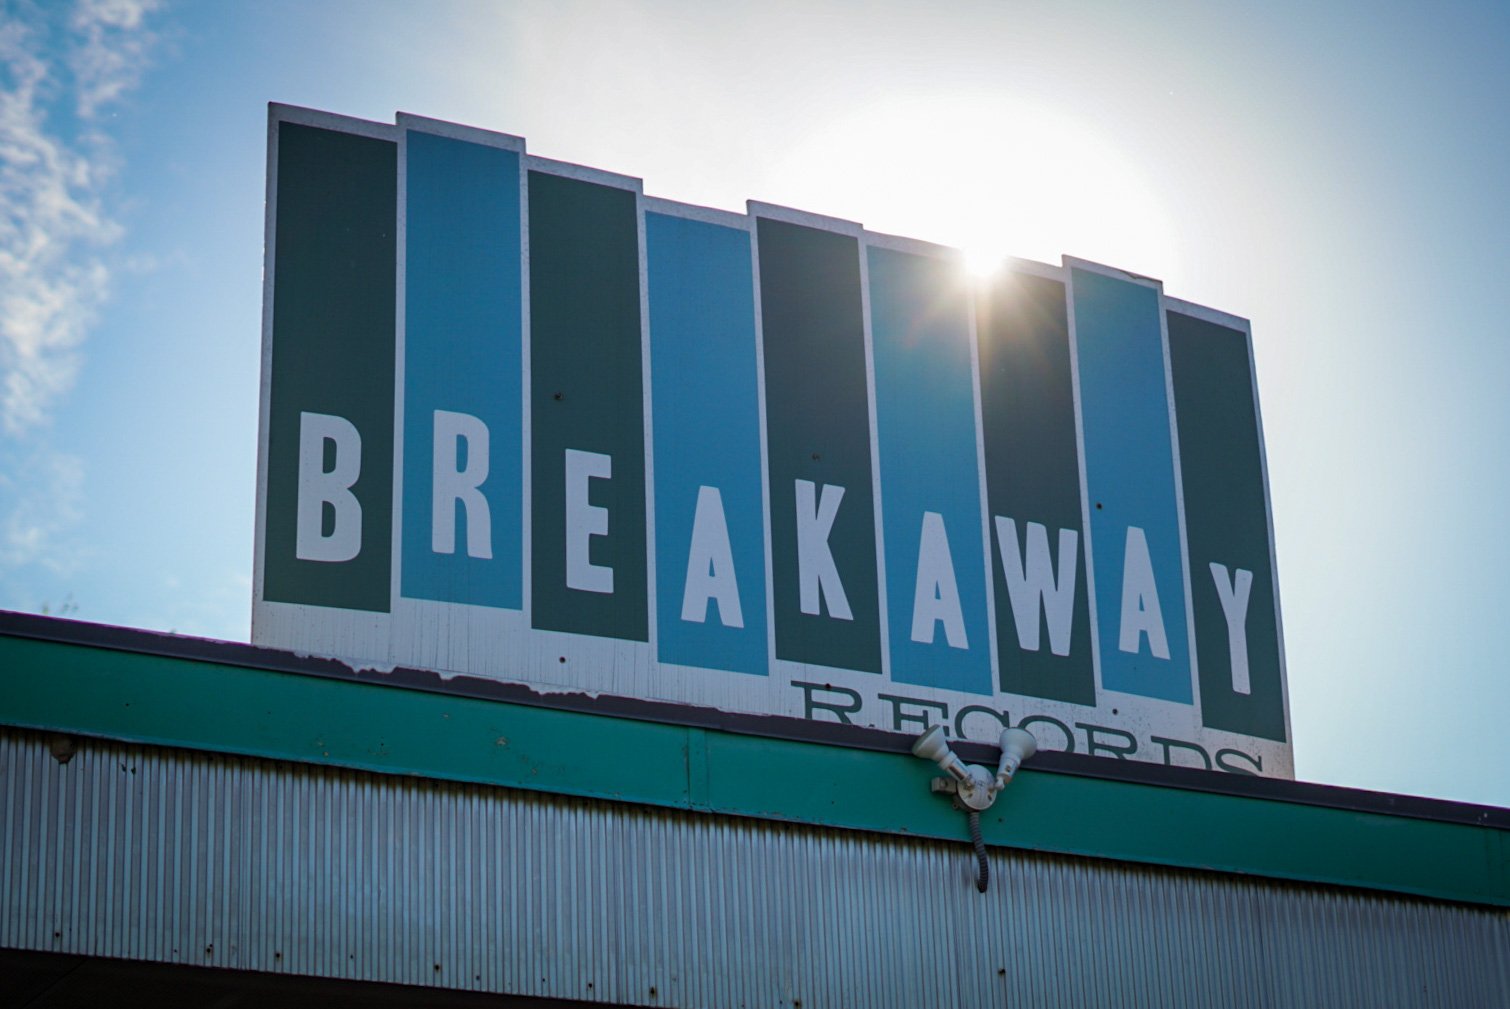  Breakaway Records storefront 